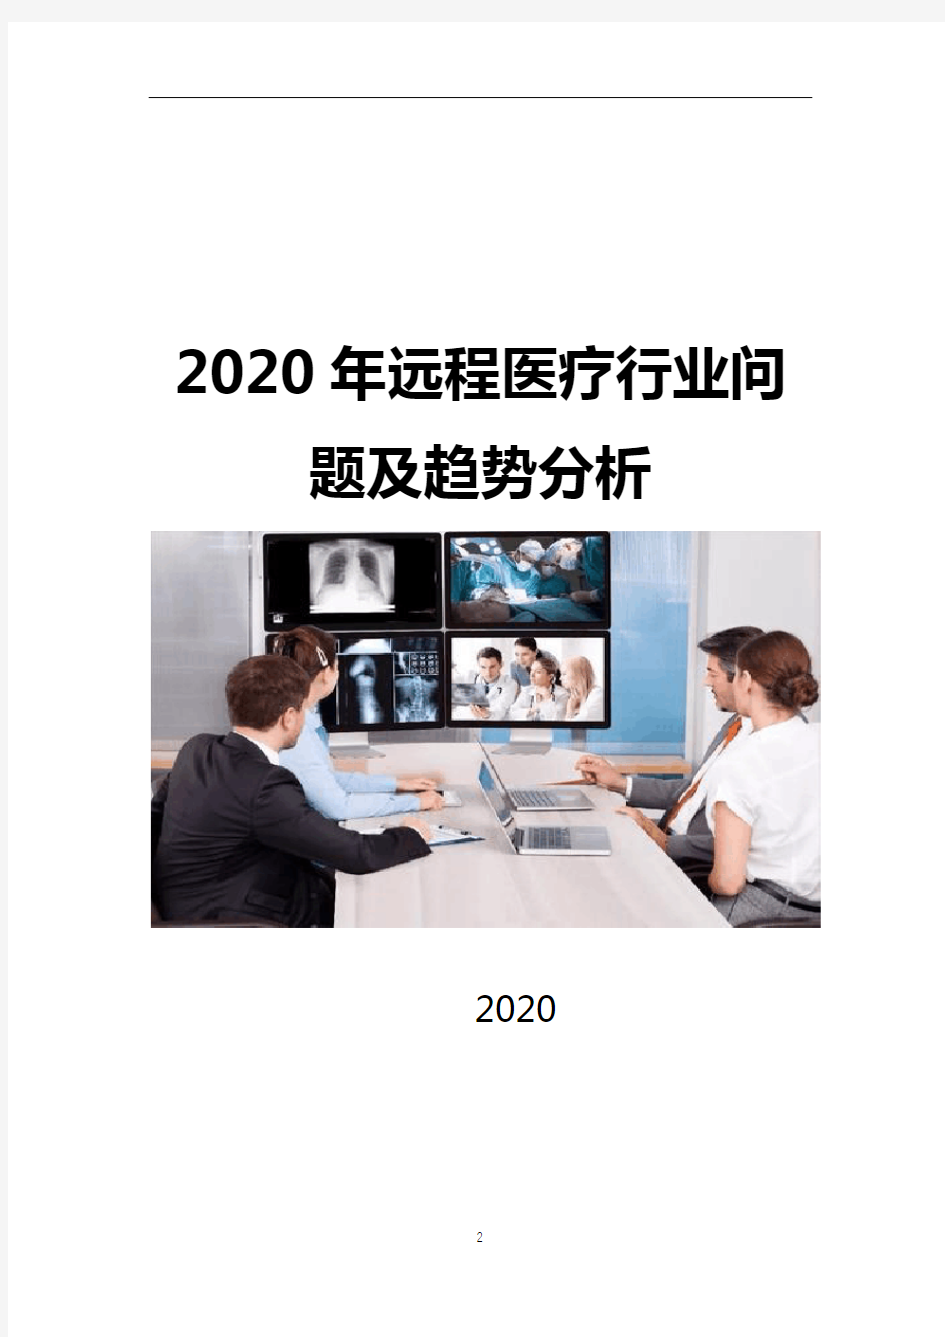 2020年远程医疗行业问题分析及趋势分析